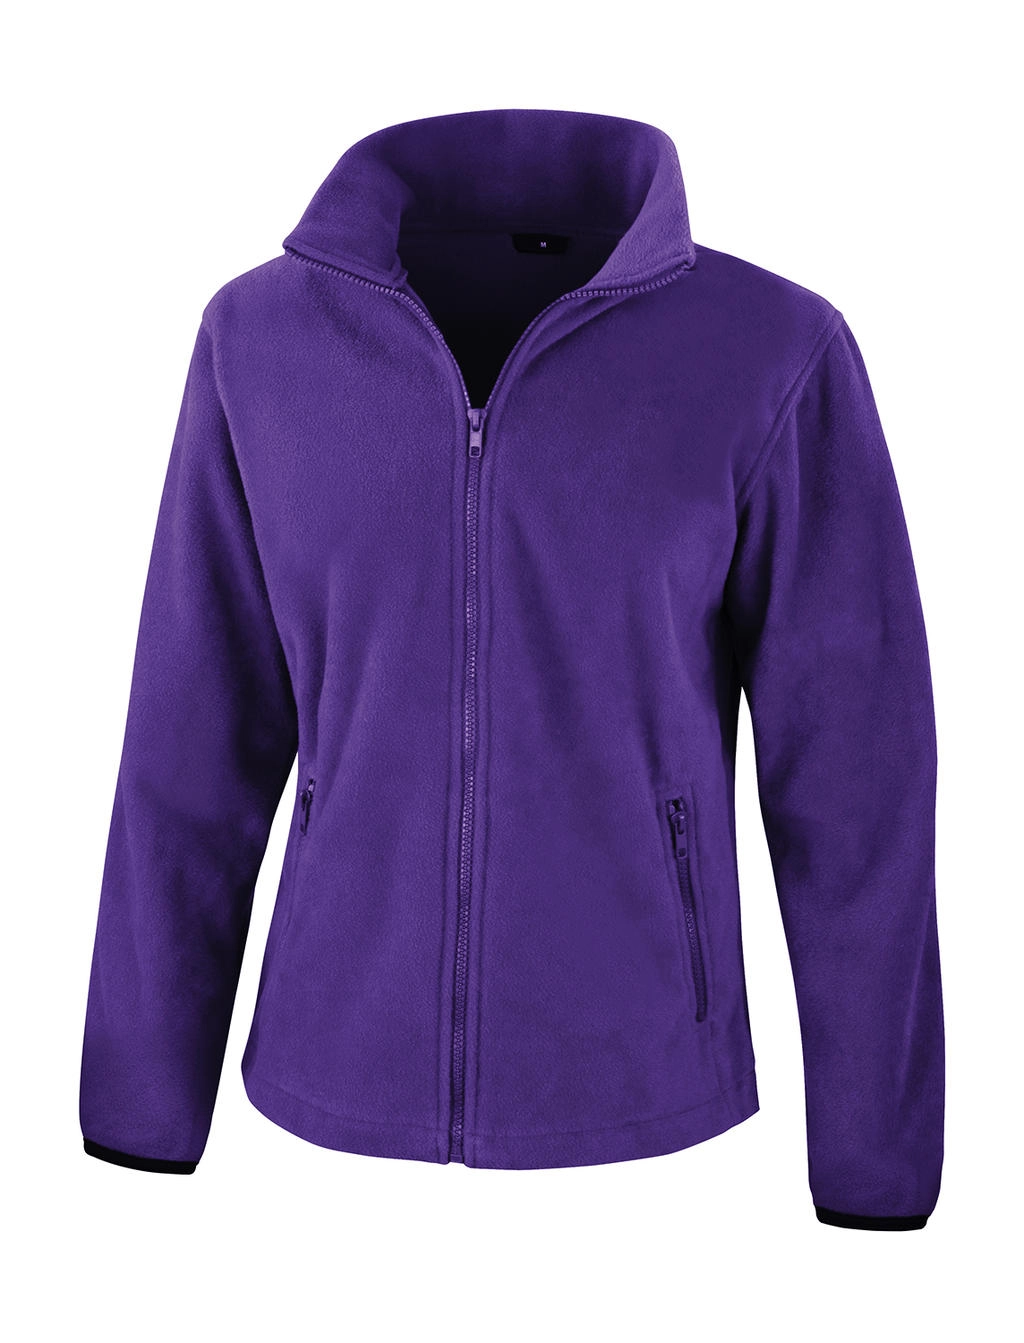 Womens Fashion Fit Outdoor Fleece zum Besticken und Bedrucken in der Farbe Purple mit Ihren Logo, Schriftzug oder Motiv.